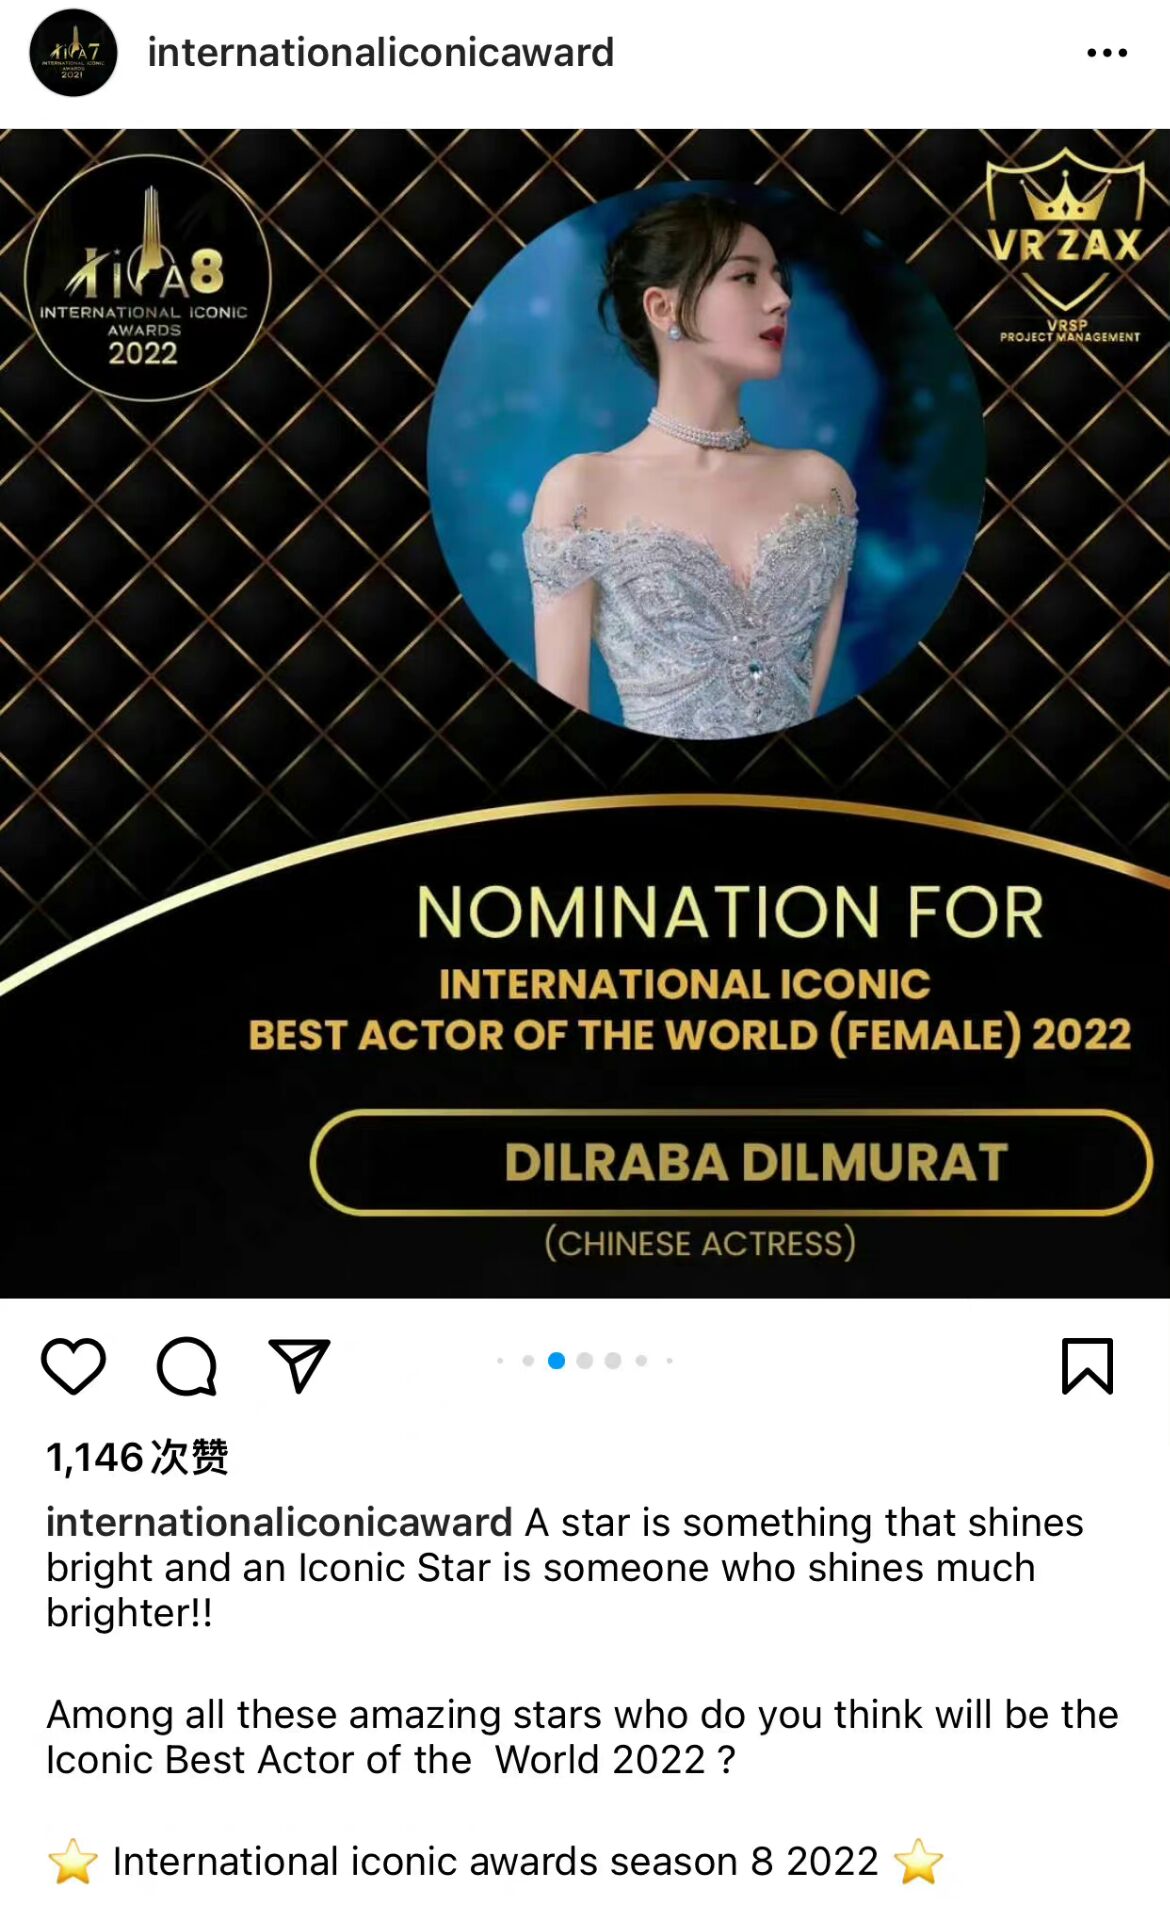 太优秀了！迪丽热巴提名标志性世界最佳女演员，继成龙后提名的中国女演员